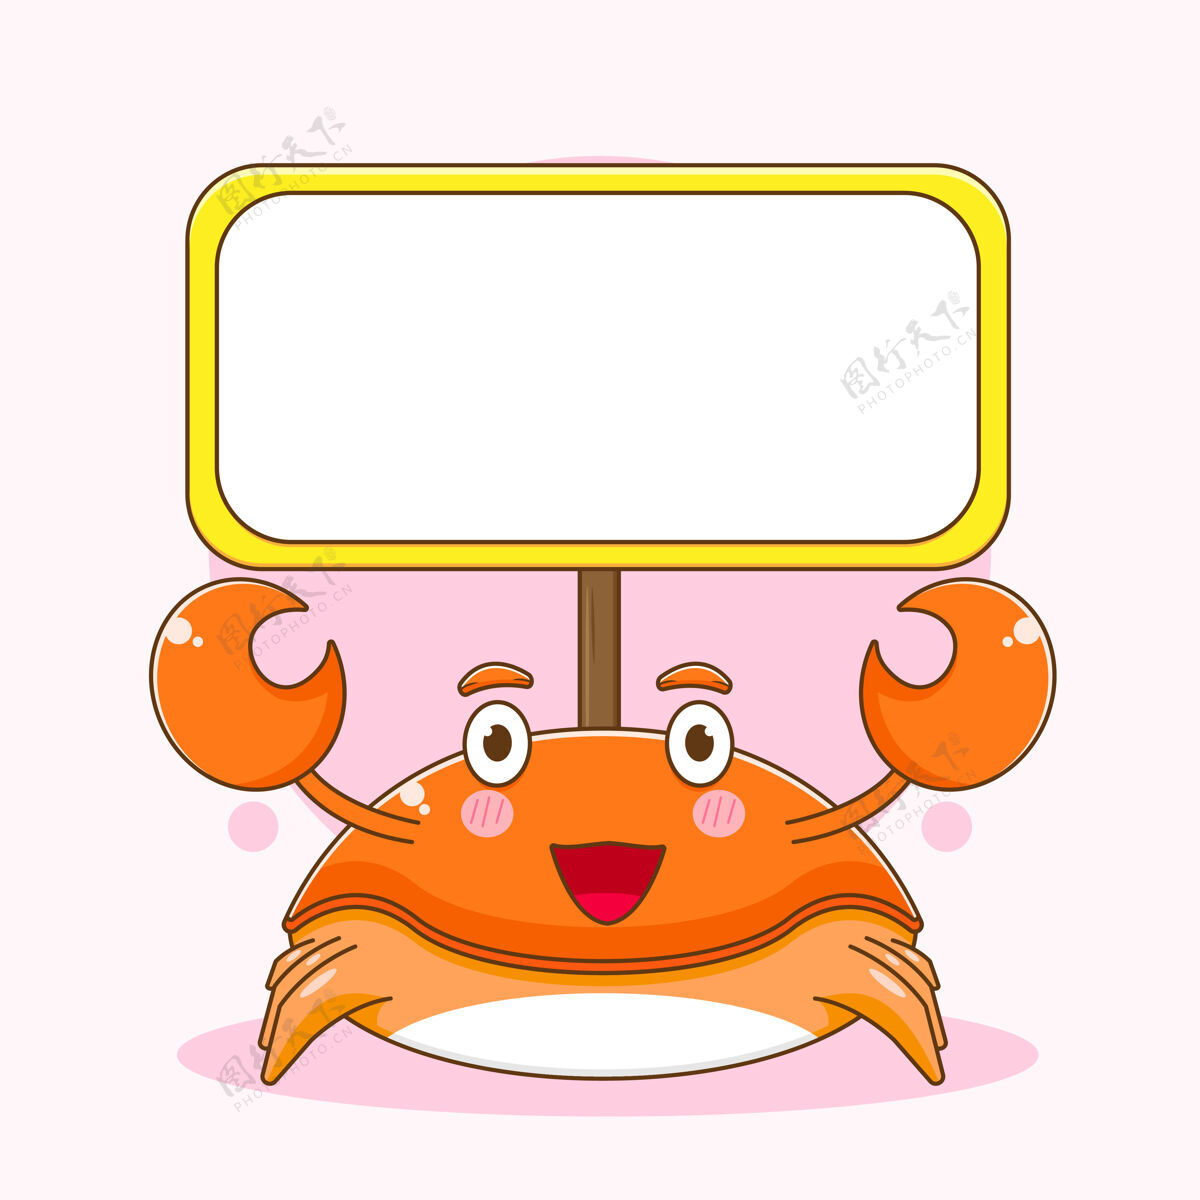 小龙虾卡通插图可爱的螃蟹角色与空板可爱龙虾动物